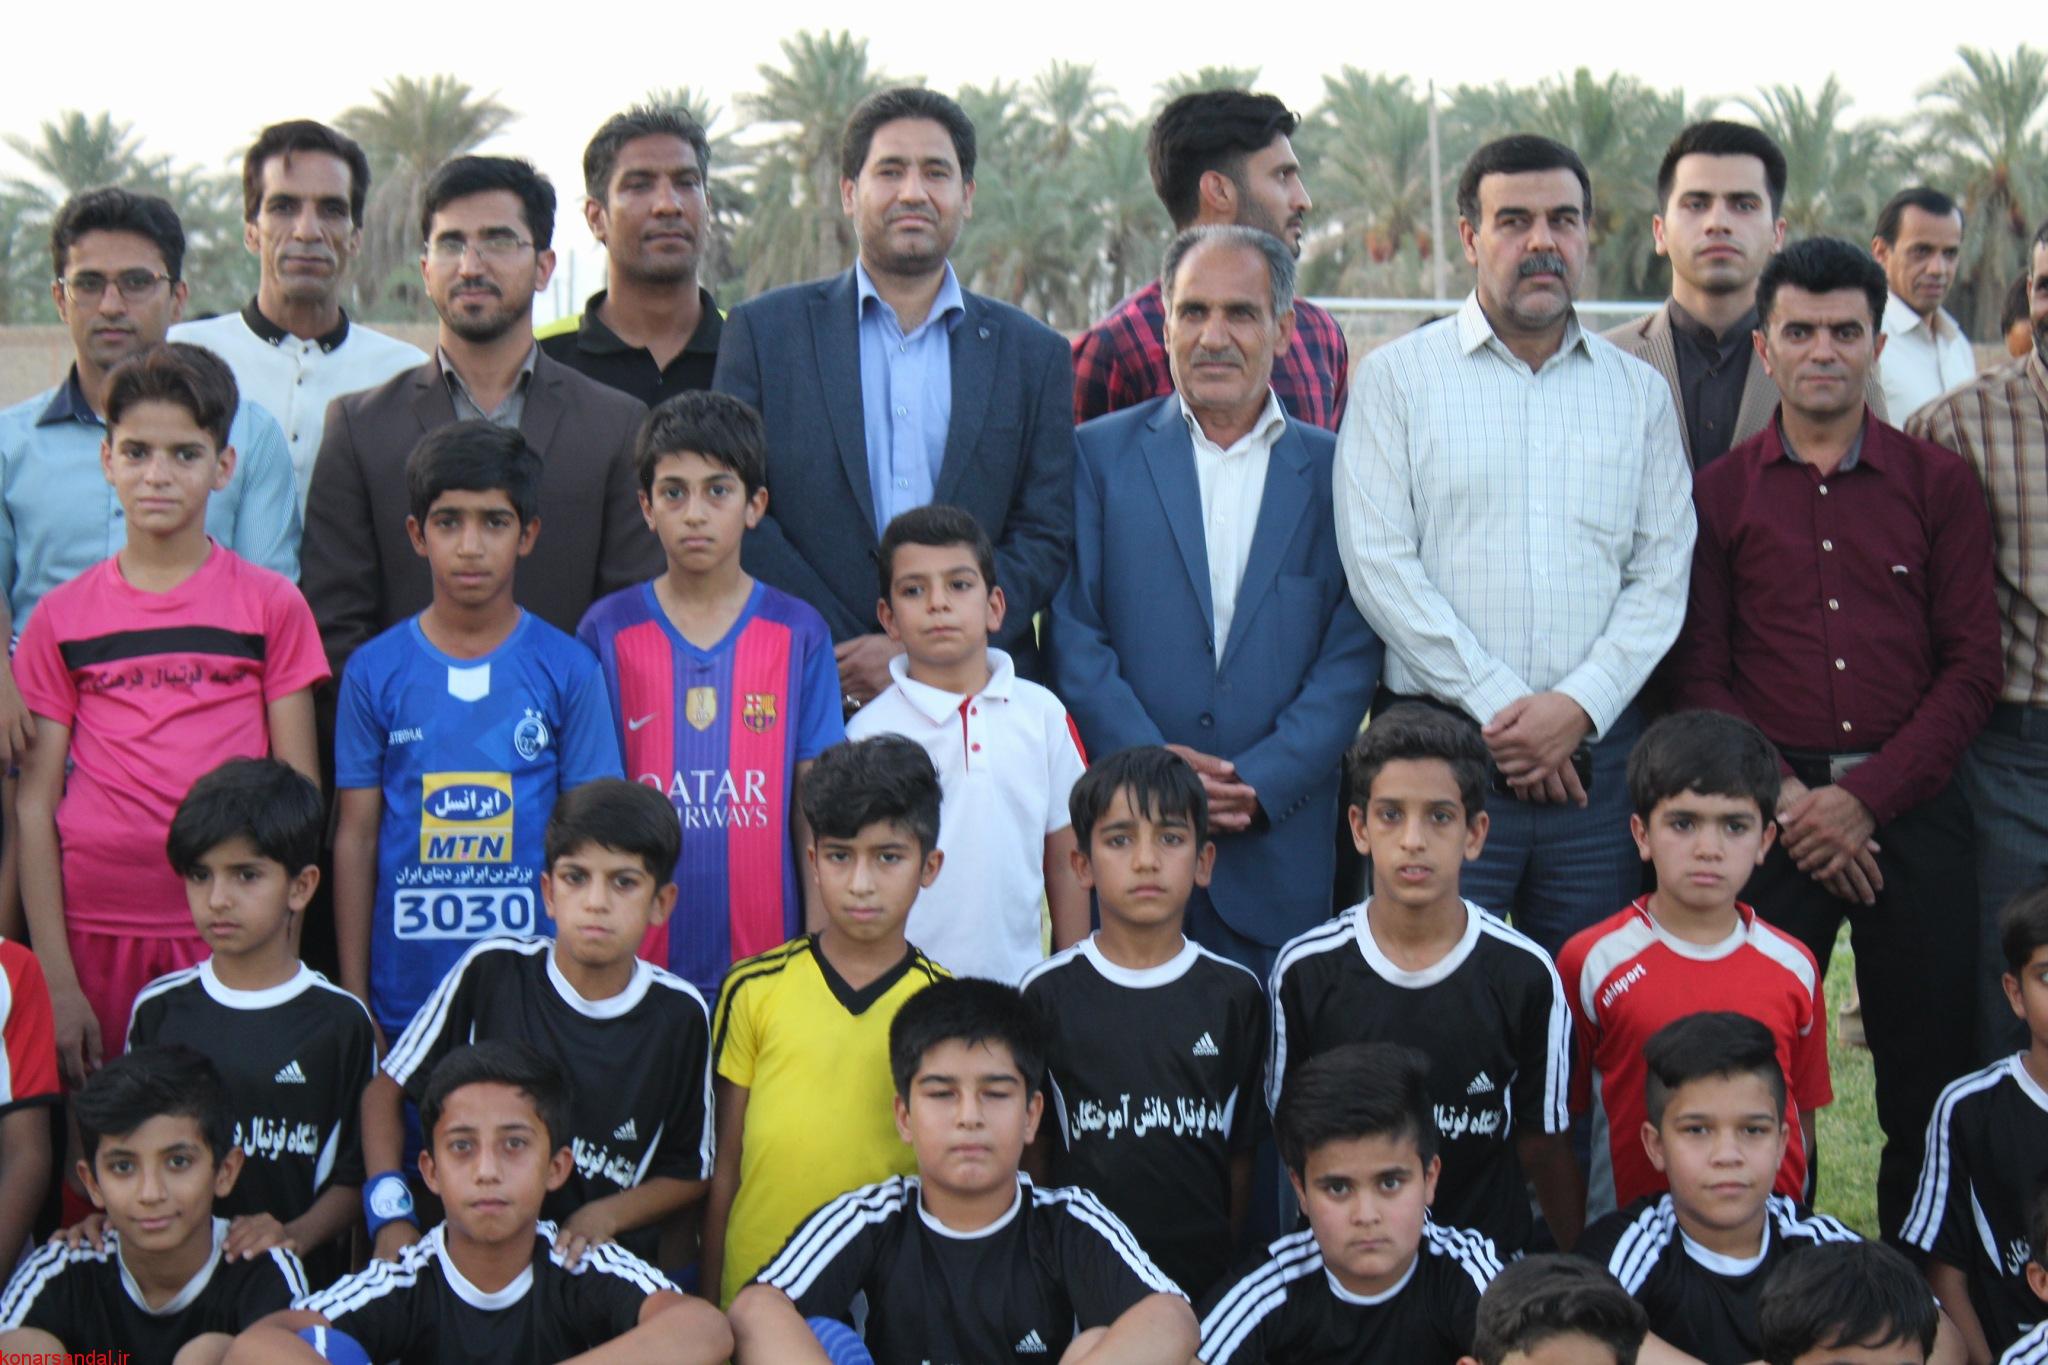 آکادمی فوتبال شهرستان عنبرآباد بزودی راه اندازی خواهد شد | سایت خبری تحلیلی  کنارصندل